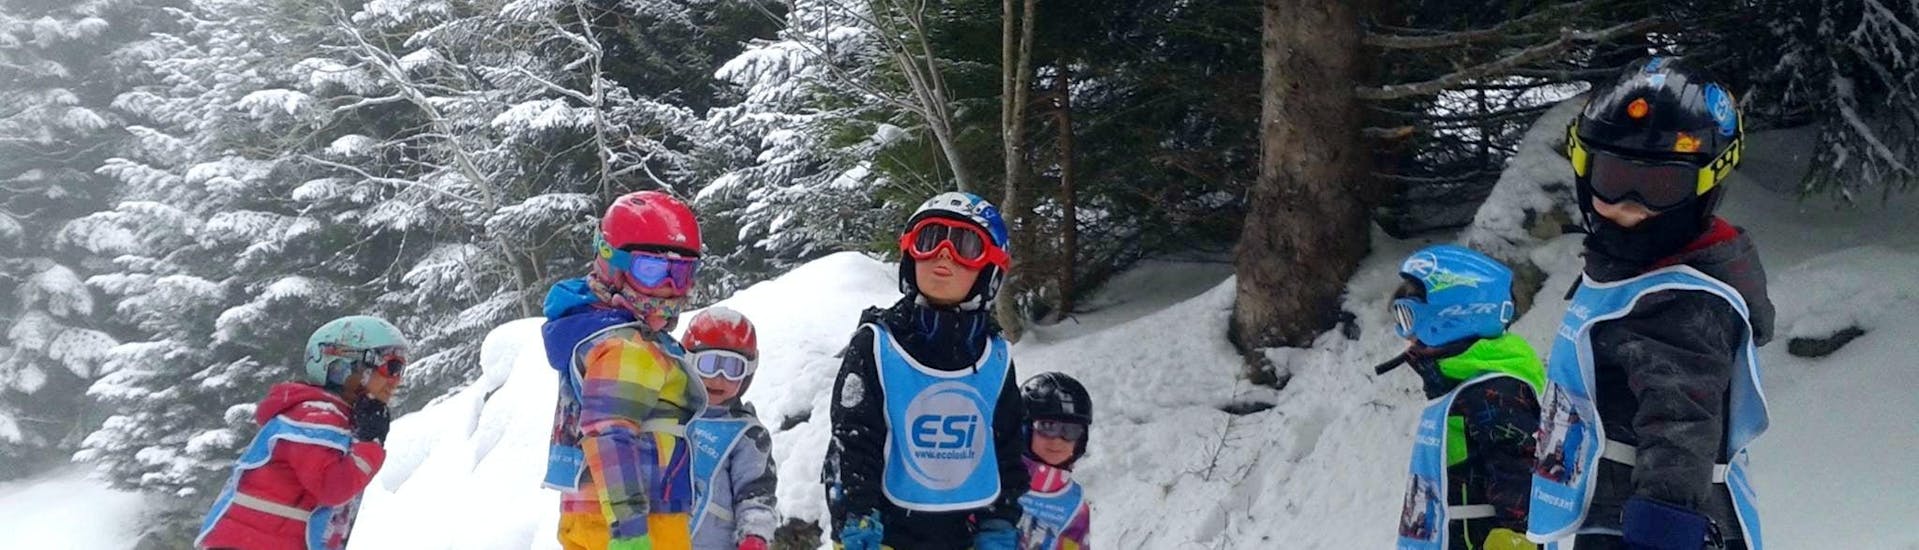 Los niños están parados en medio de las pistas rodeados de árboles durante sus clases de esquí para niños (3-11 años) - Vacaciones - Mañana con la escuela de esquí ESI Ecoloski Barèges.